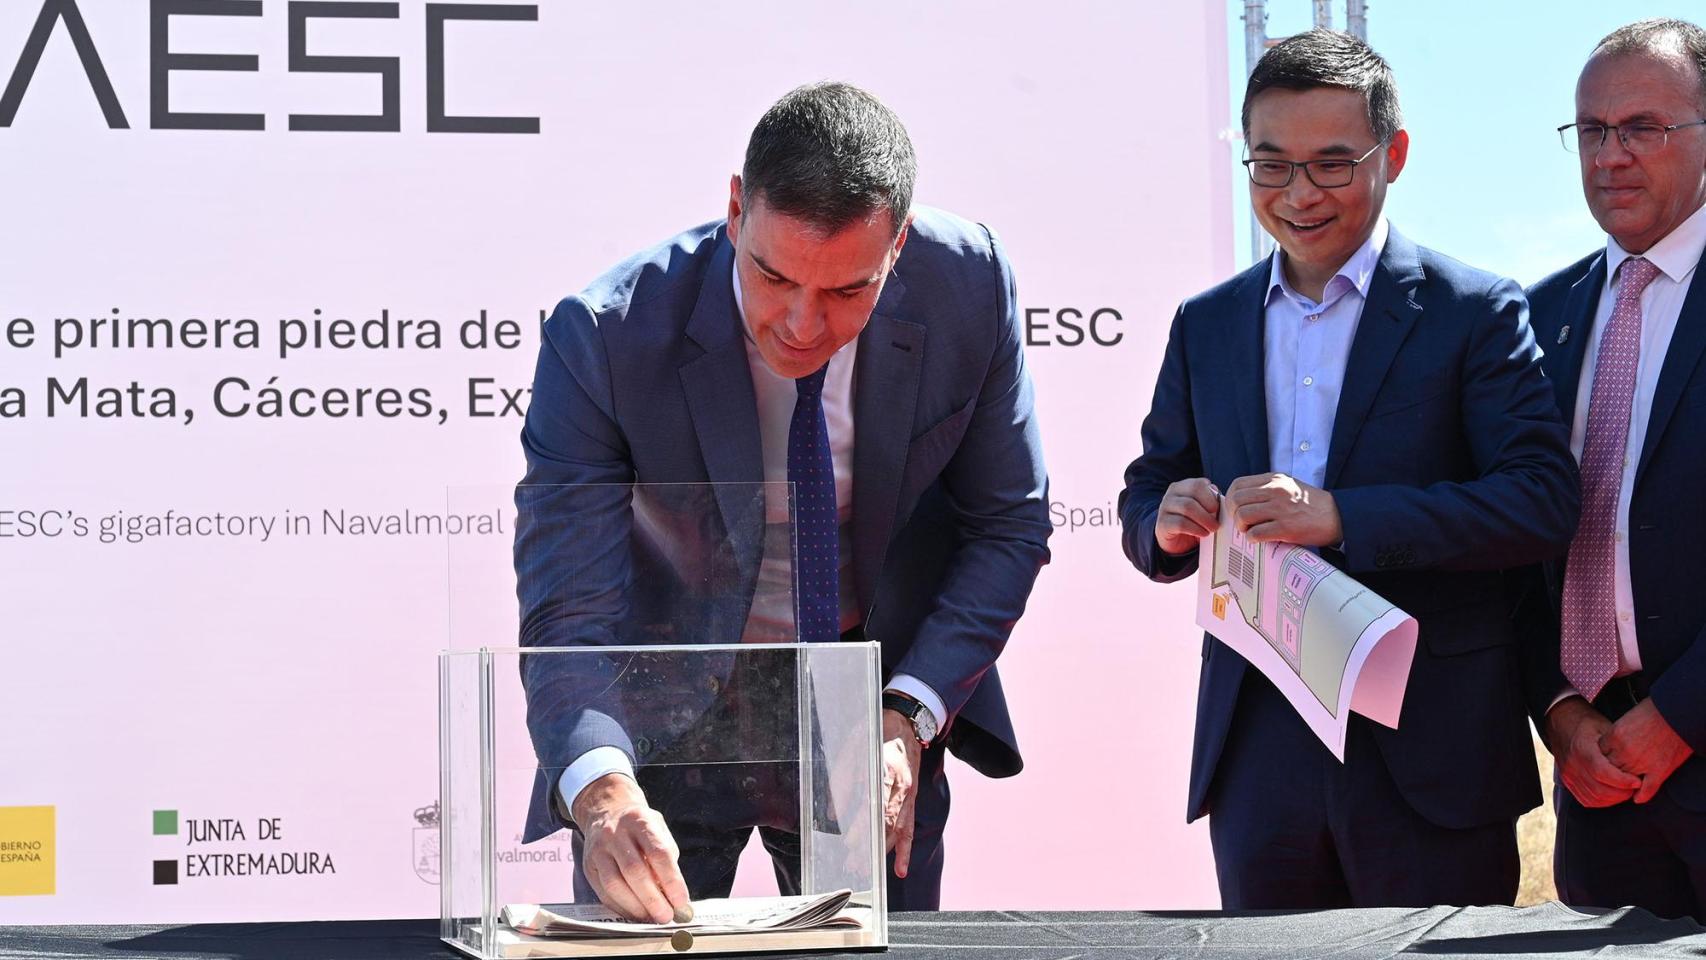 Pedro Sánchez deposita objetos conmemorativos  en el acto de colocación de la primera piedra de la gigafactoría de AESC.